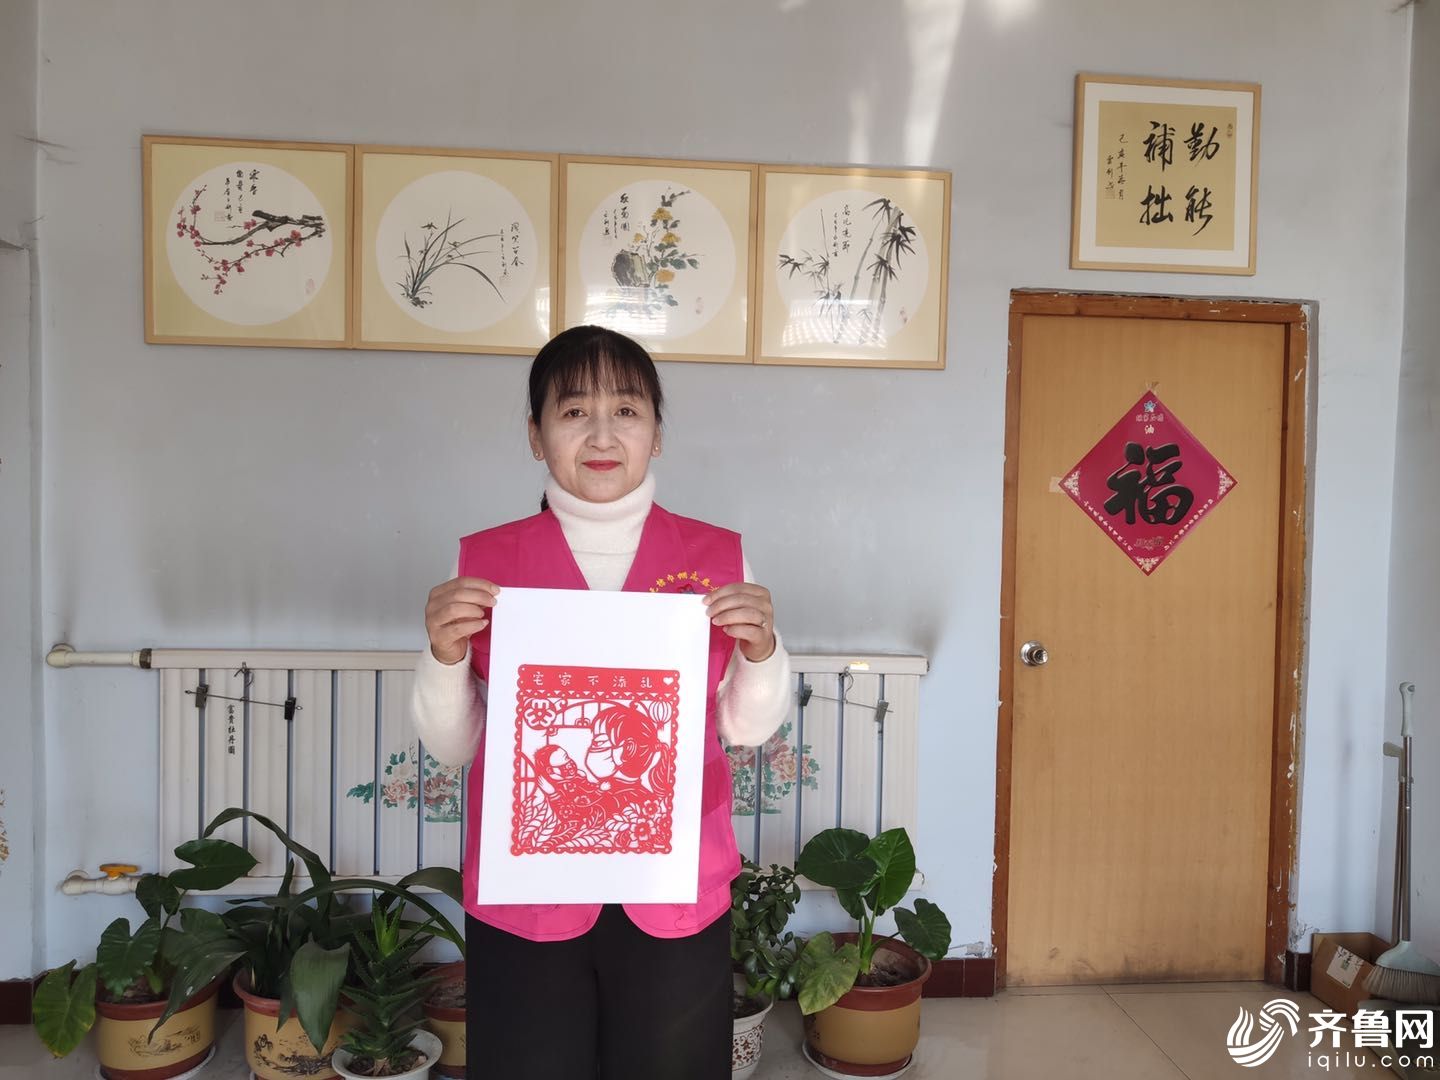 巾帼志愿者方秀岭展示为疫情防控创作的作品 (1)